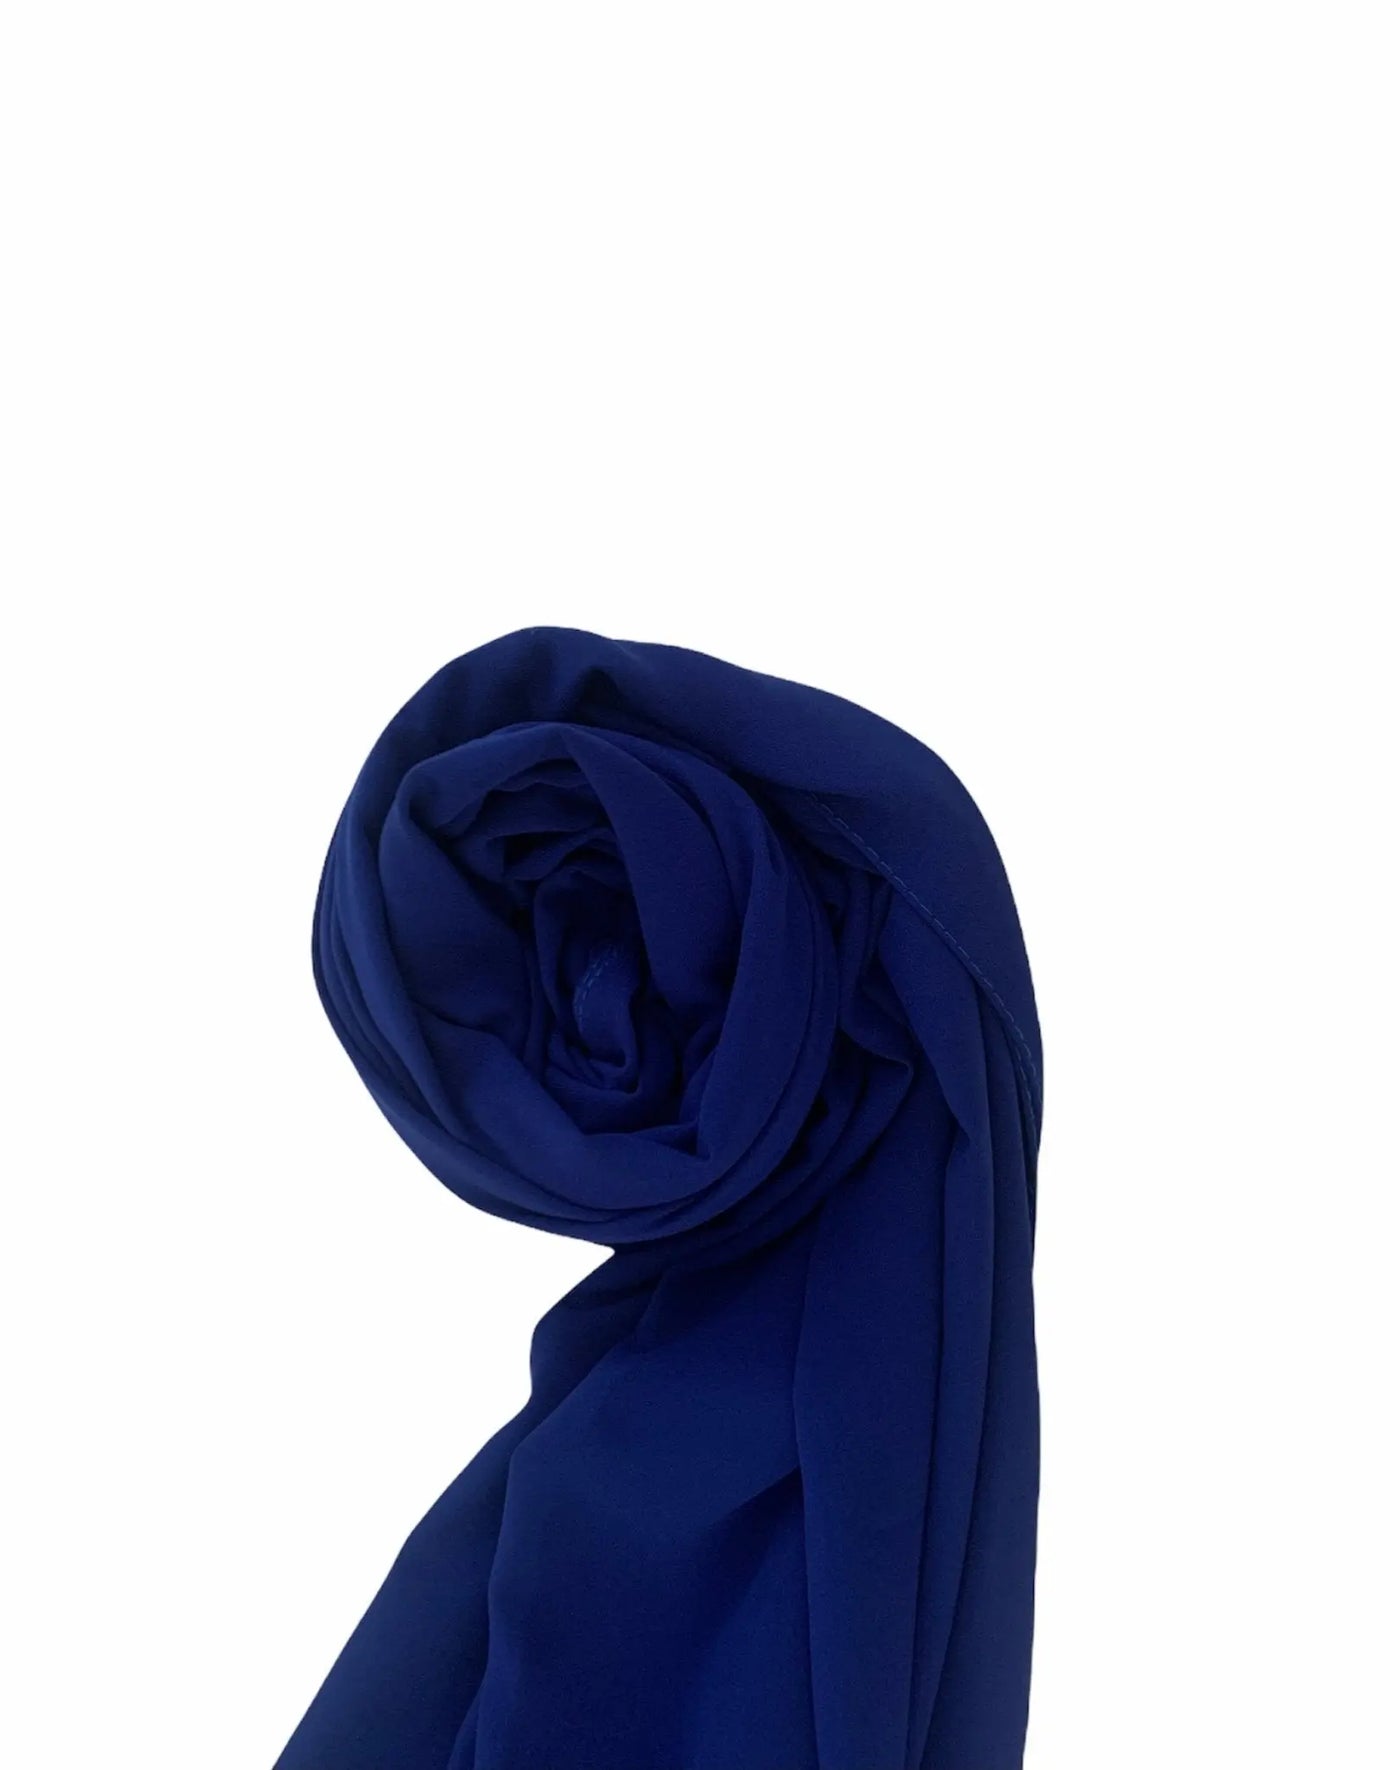 Hijab Soie de Médine - Blue electric - MON HIJAB MODEST co